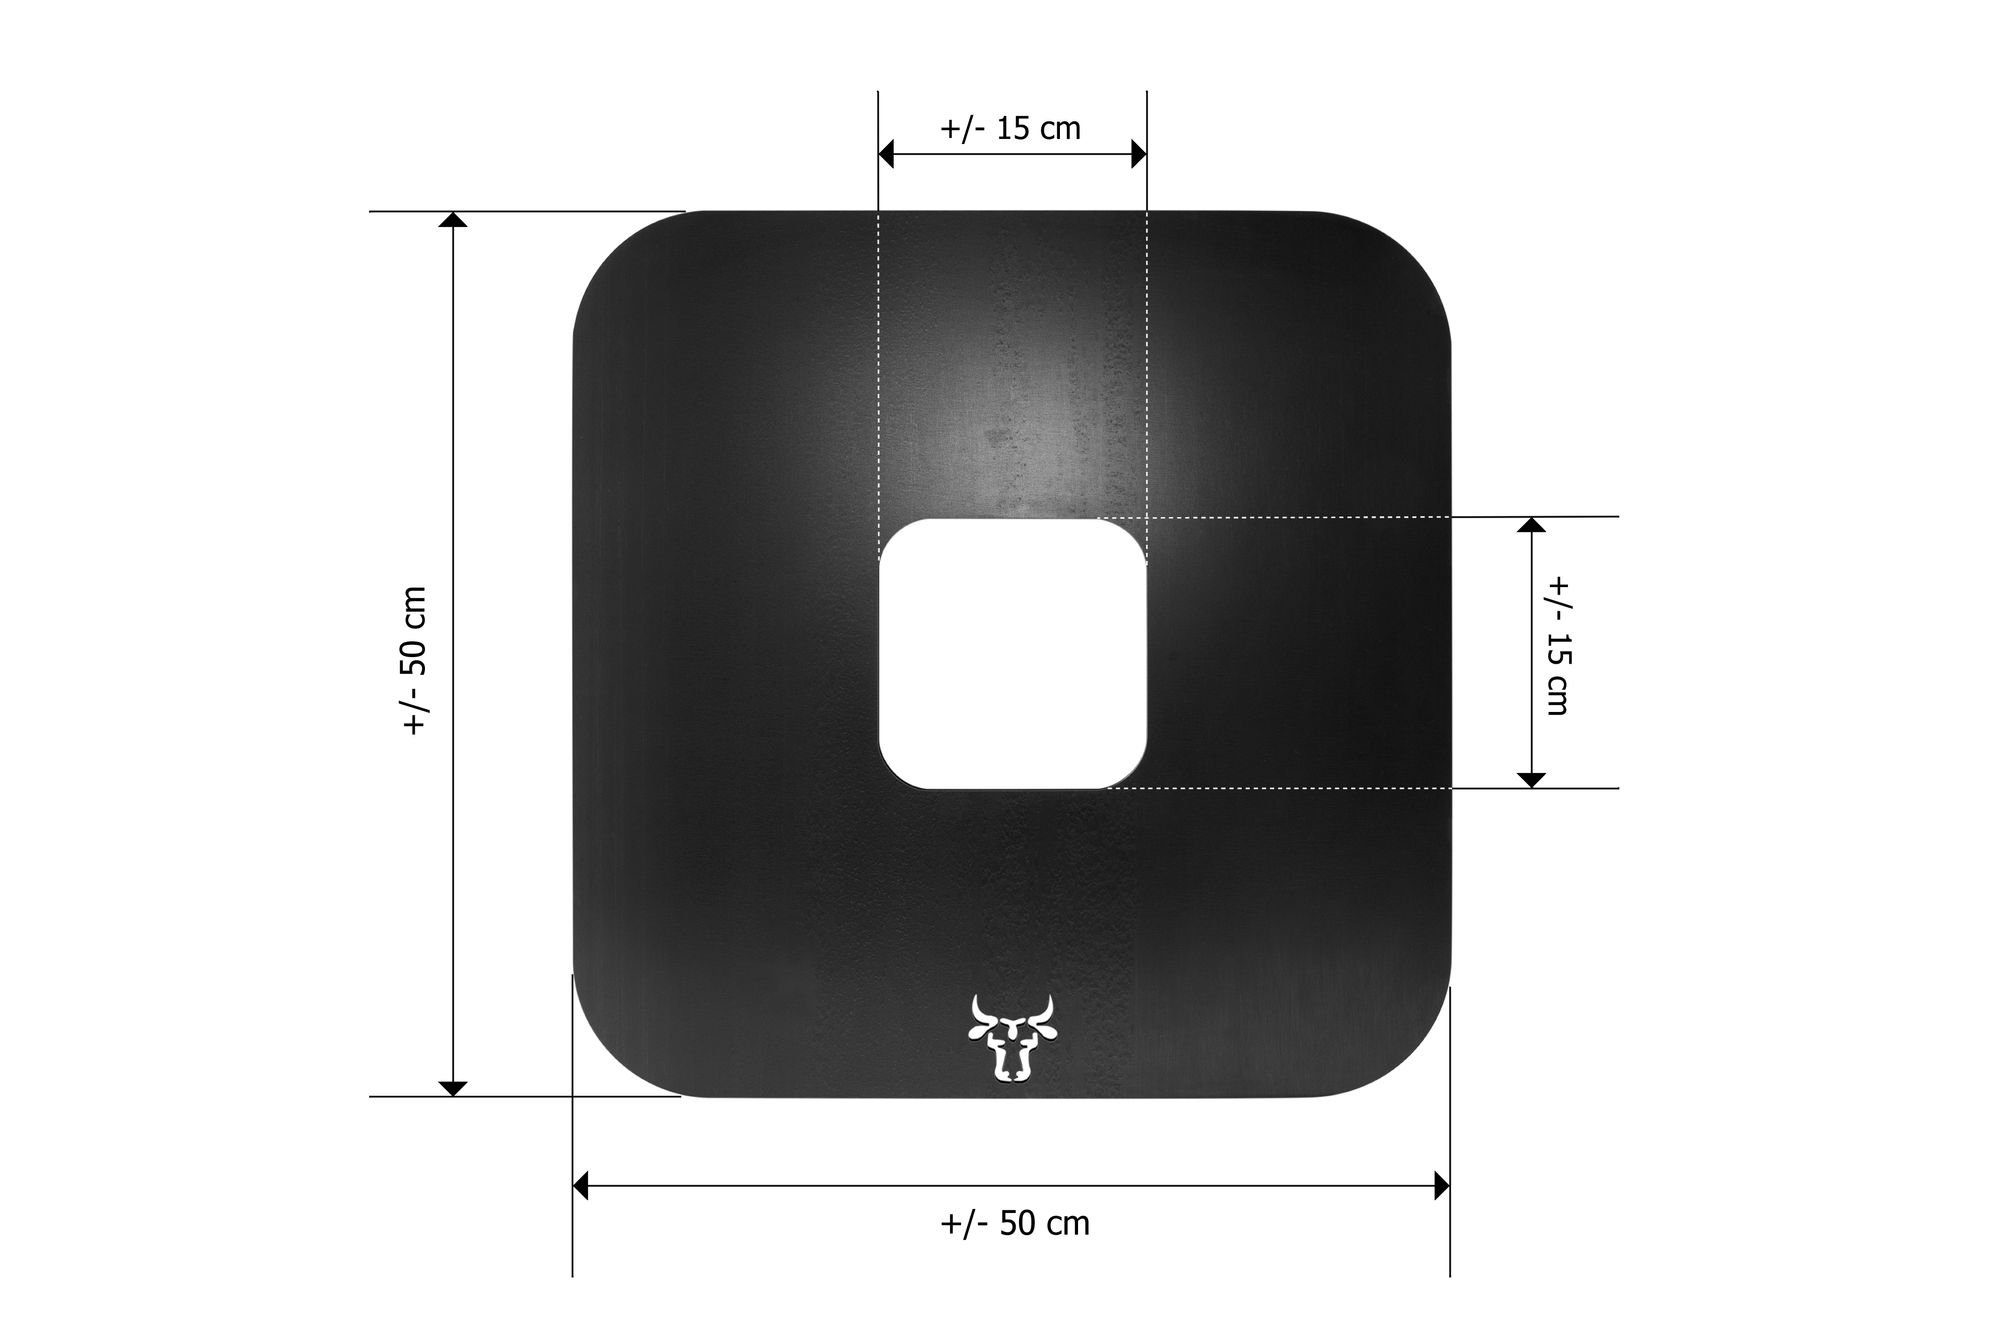 Grillring Grillplatte tuning-art Plancha GPB01 Grillaufsatz BBQ-Platte Feuerplatte